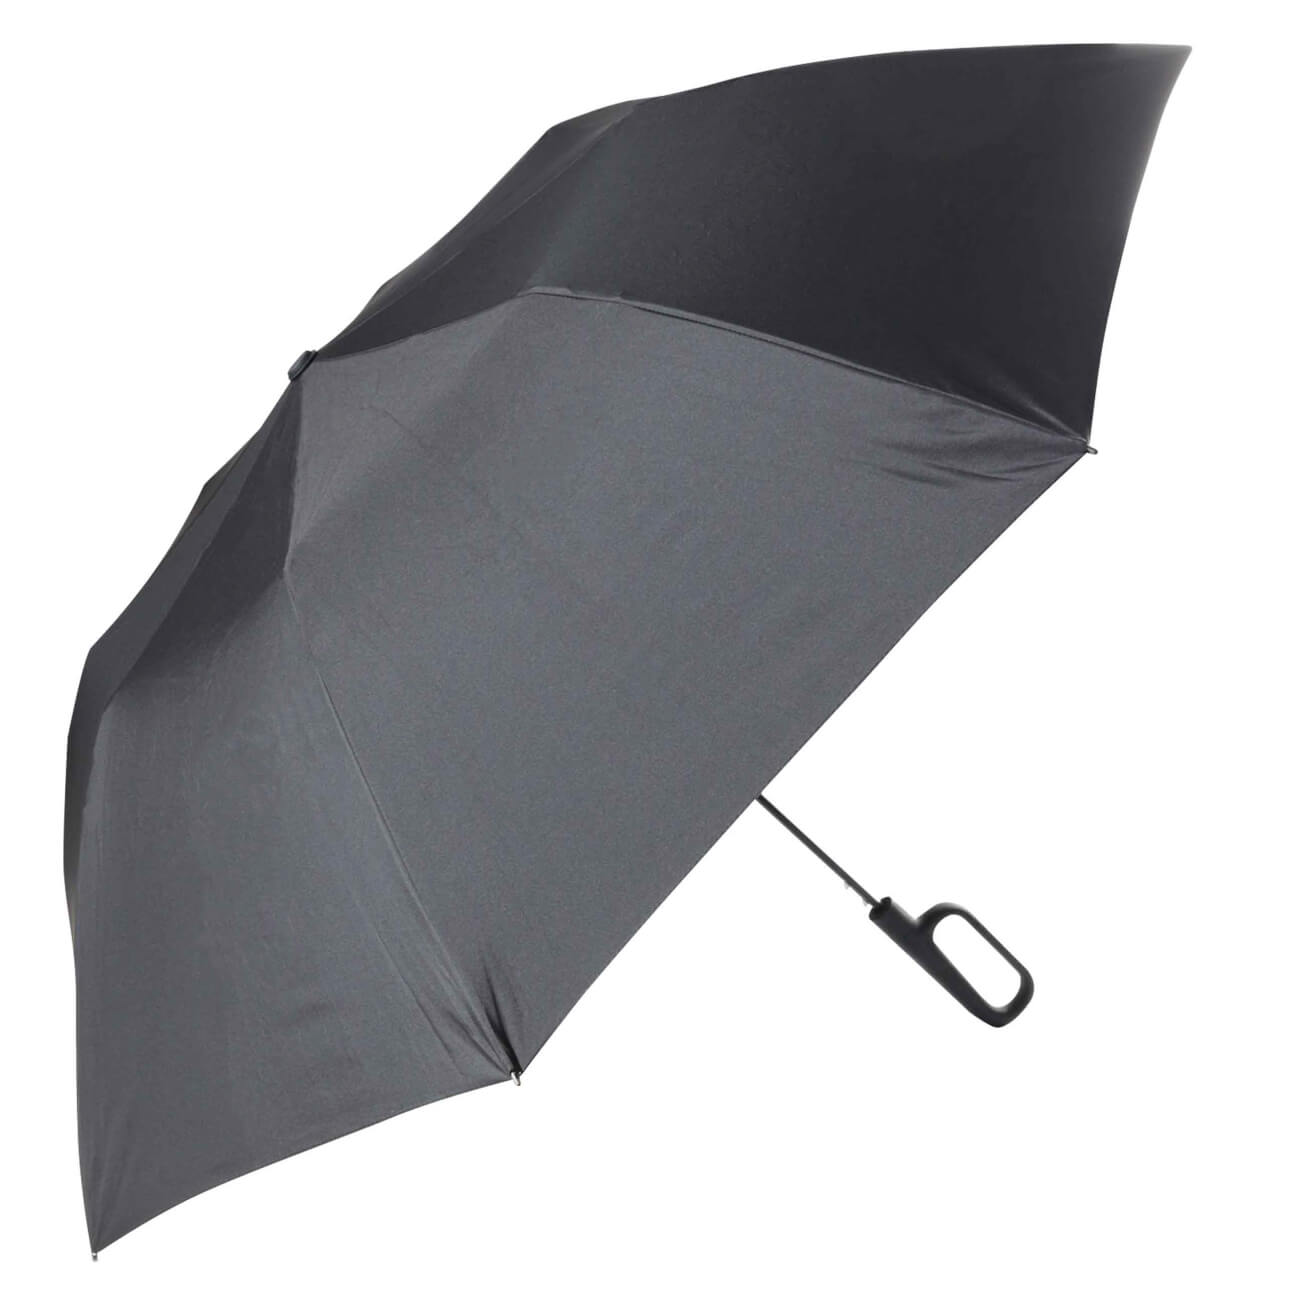 Зонт, 70 см, складной, полу-автоматический, с ручкой-карабином, эпонж, черный, Rainfall автоматический обратный складной зонт светодиодный фонарик десятикостный трехстворчатый автоматический бизнес зонт